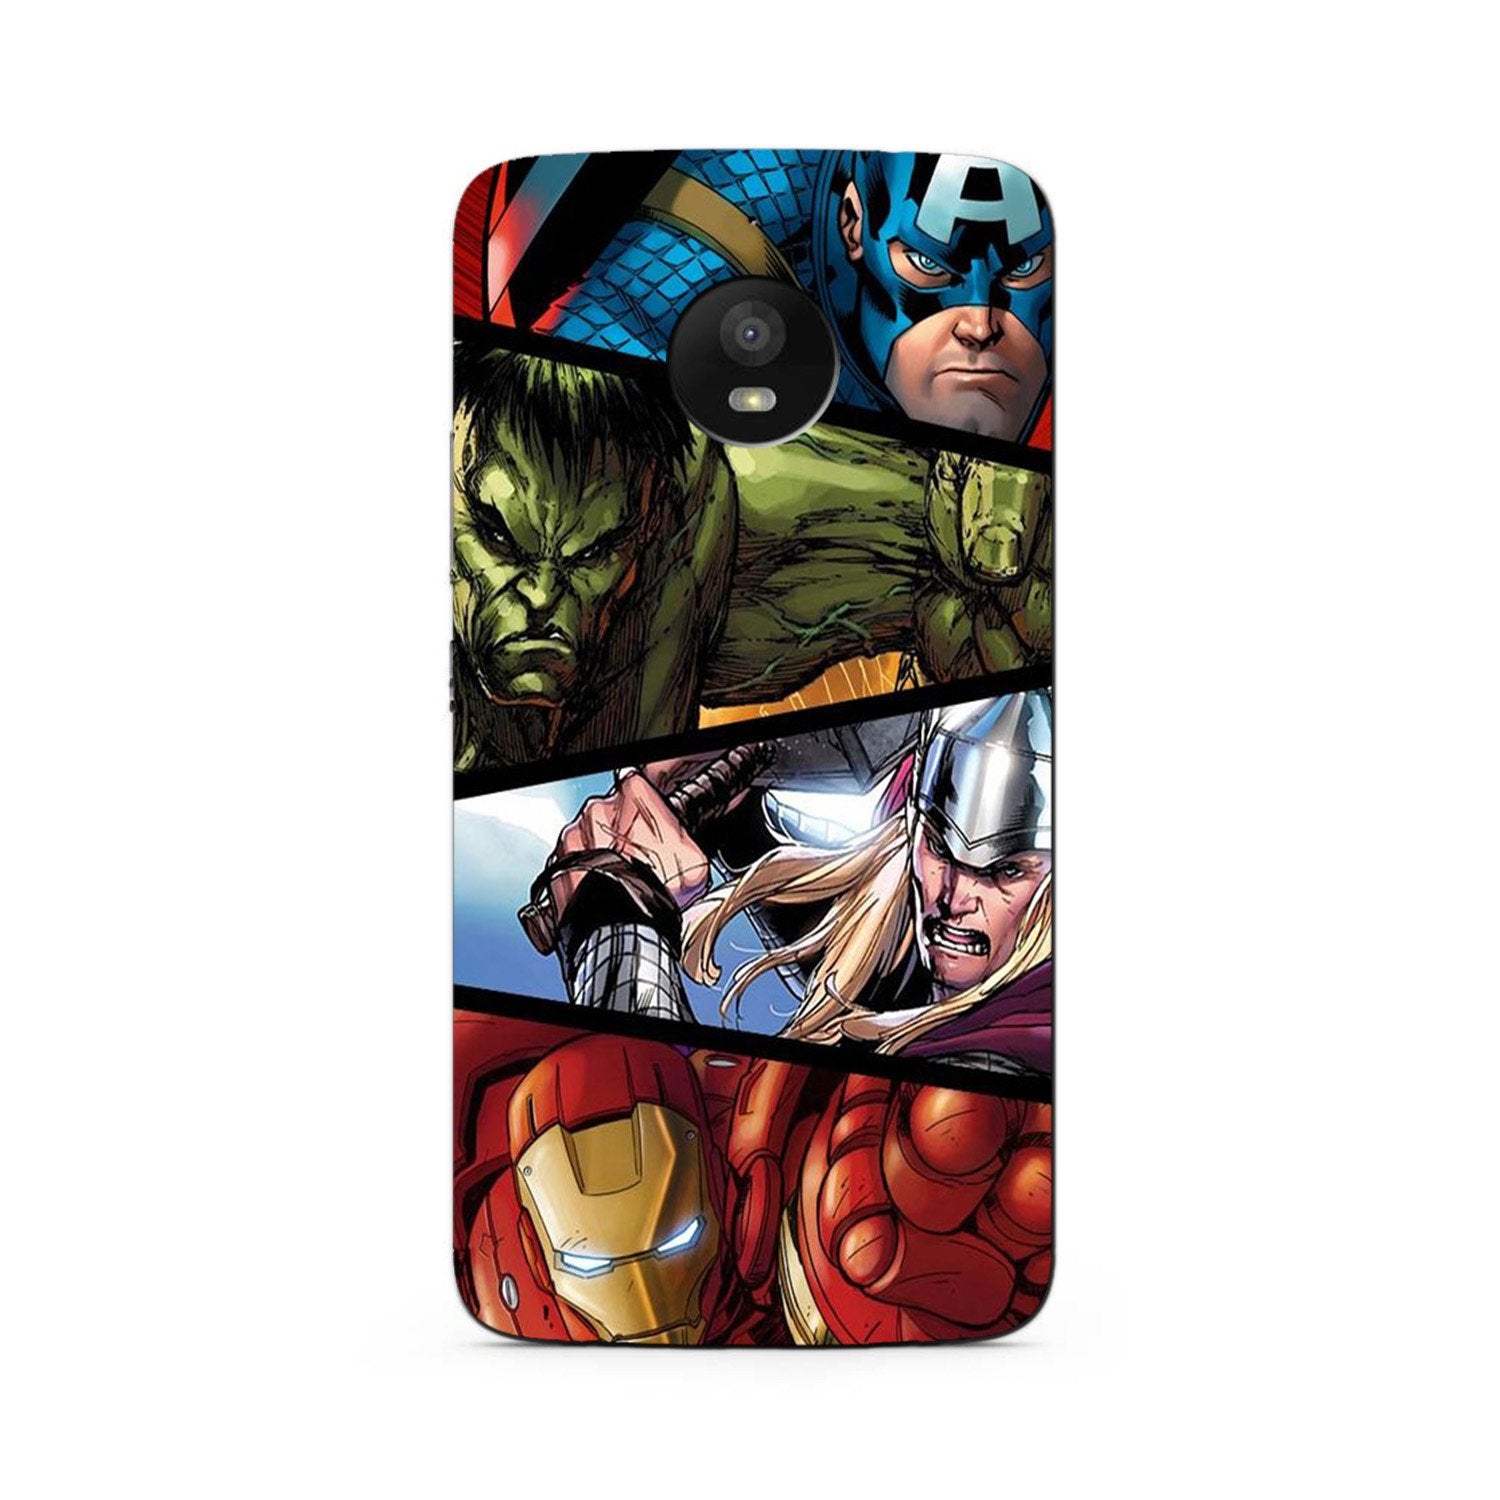 Avengers Superhero Case for Moto G5s Plus(Design - 124)